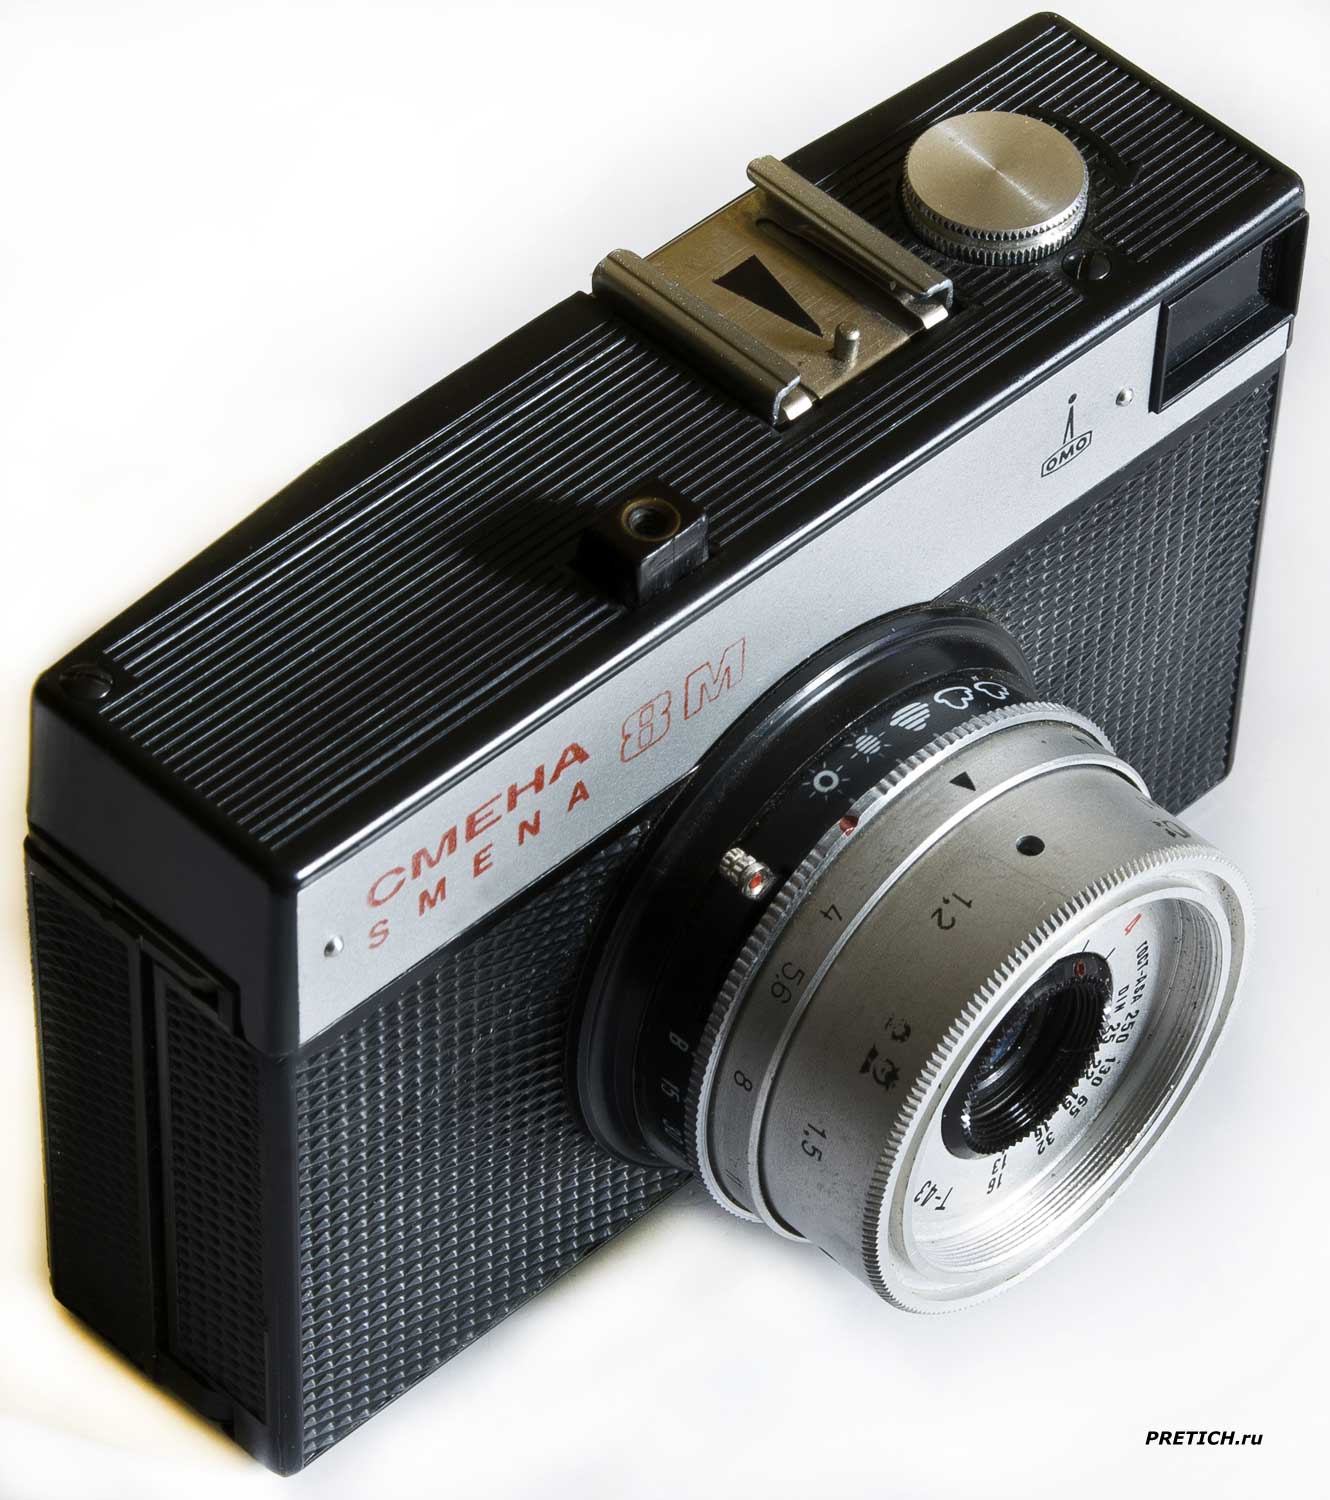 Смена-8М полное описание, фотоаппарат СССР